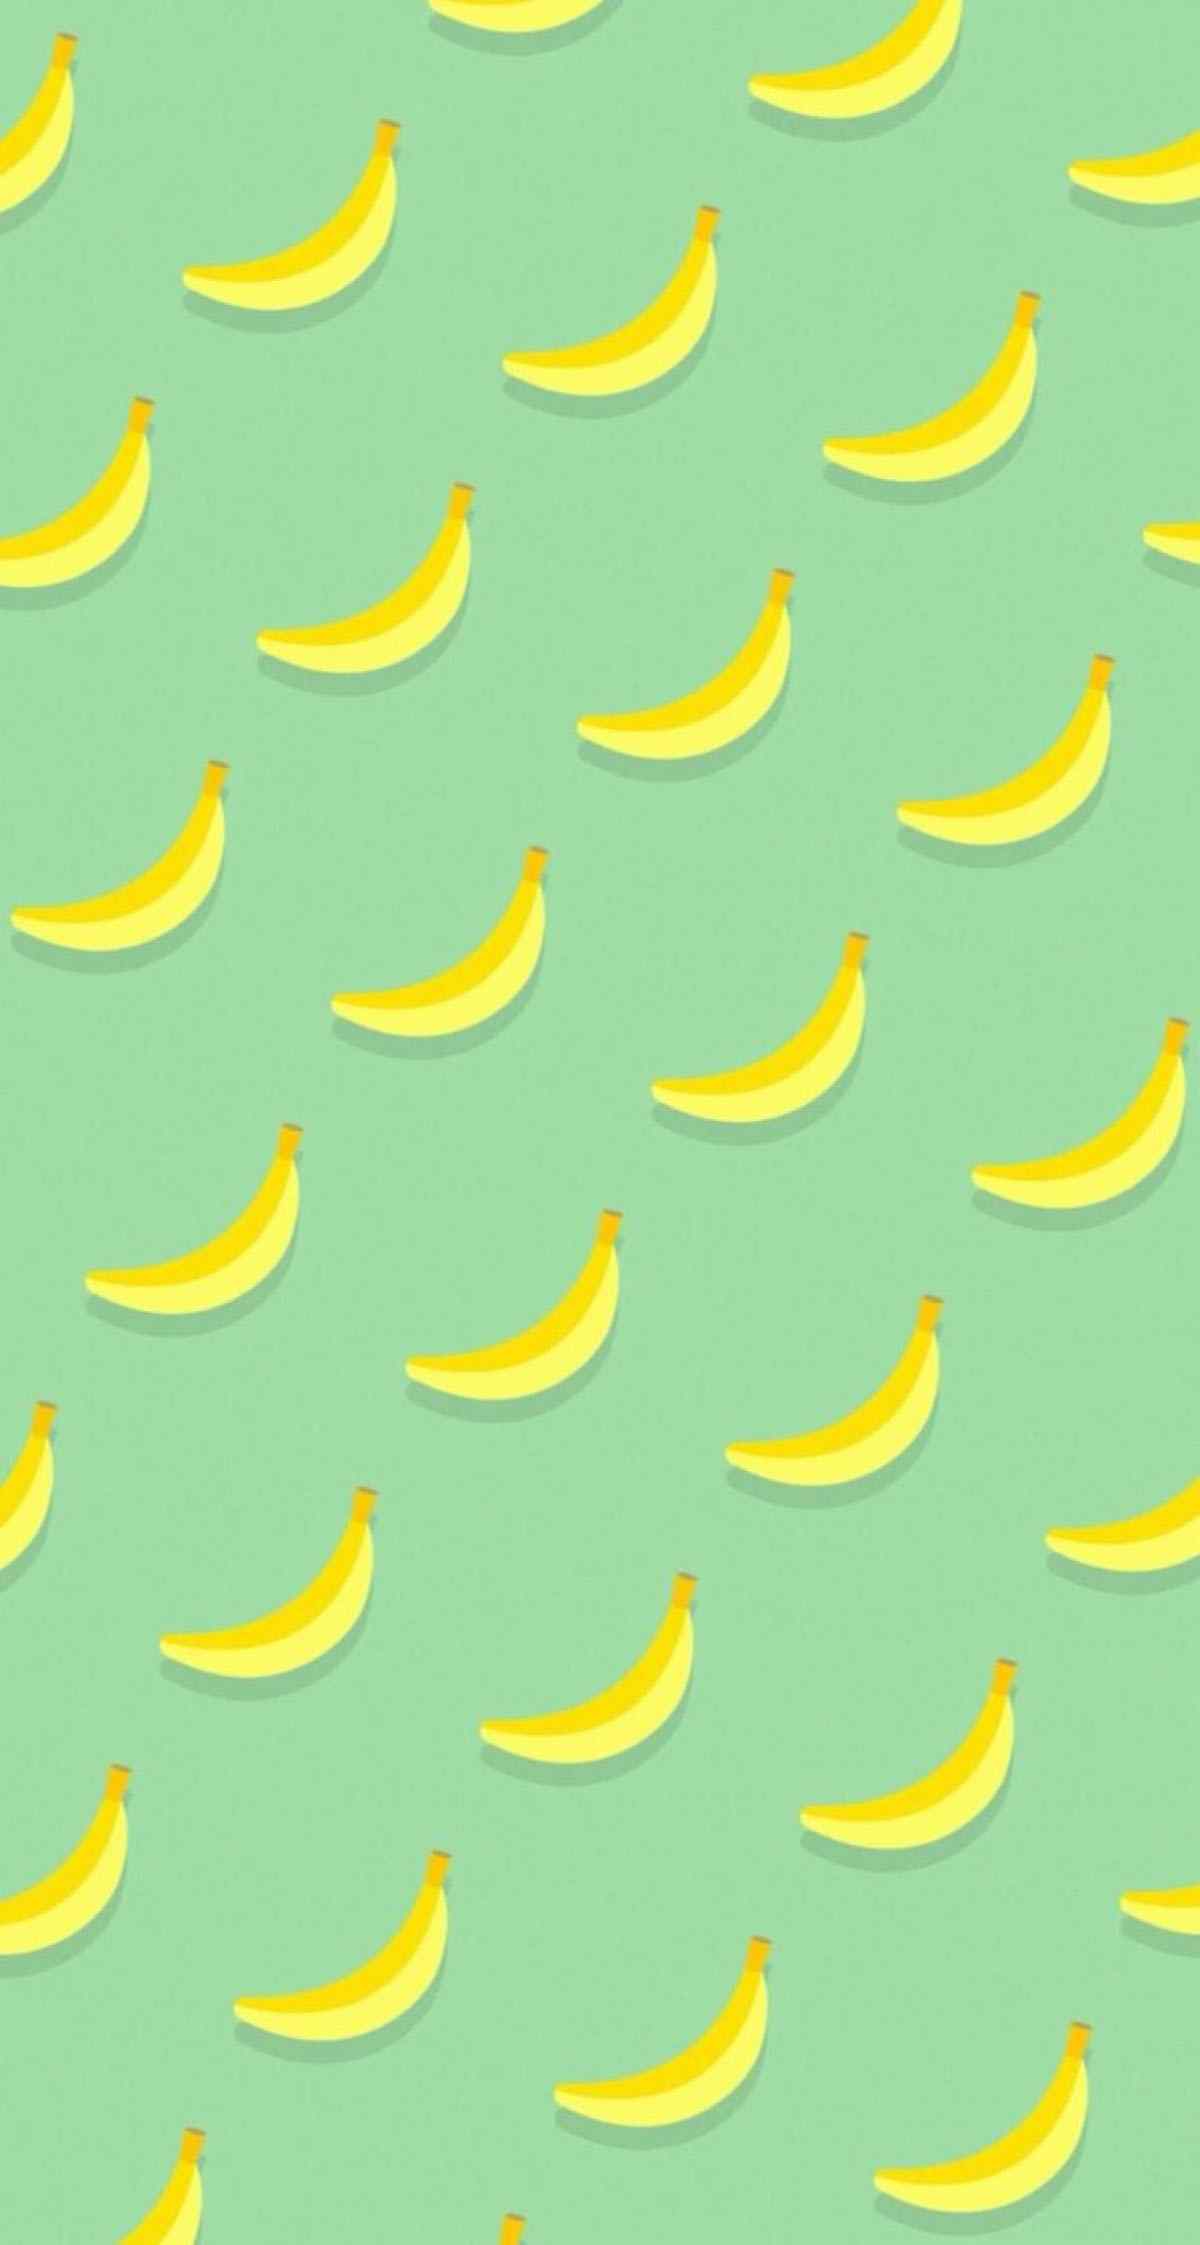 小清新嫩绿色小香蕉图片手机壁纸